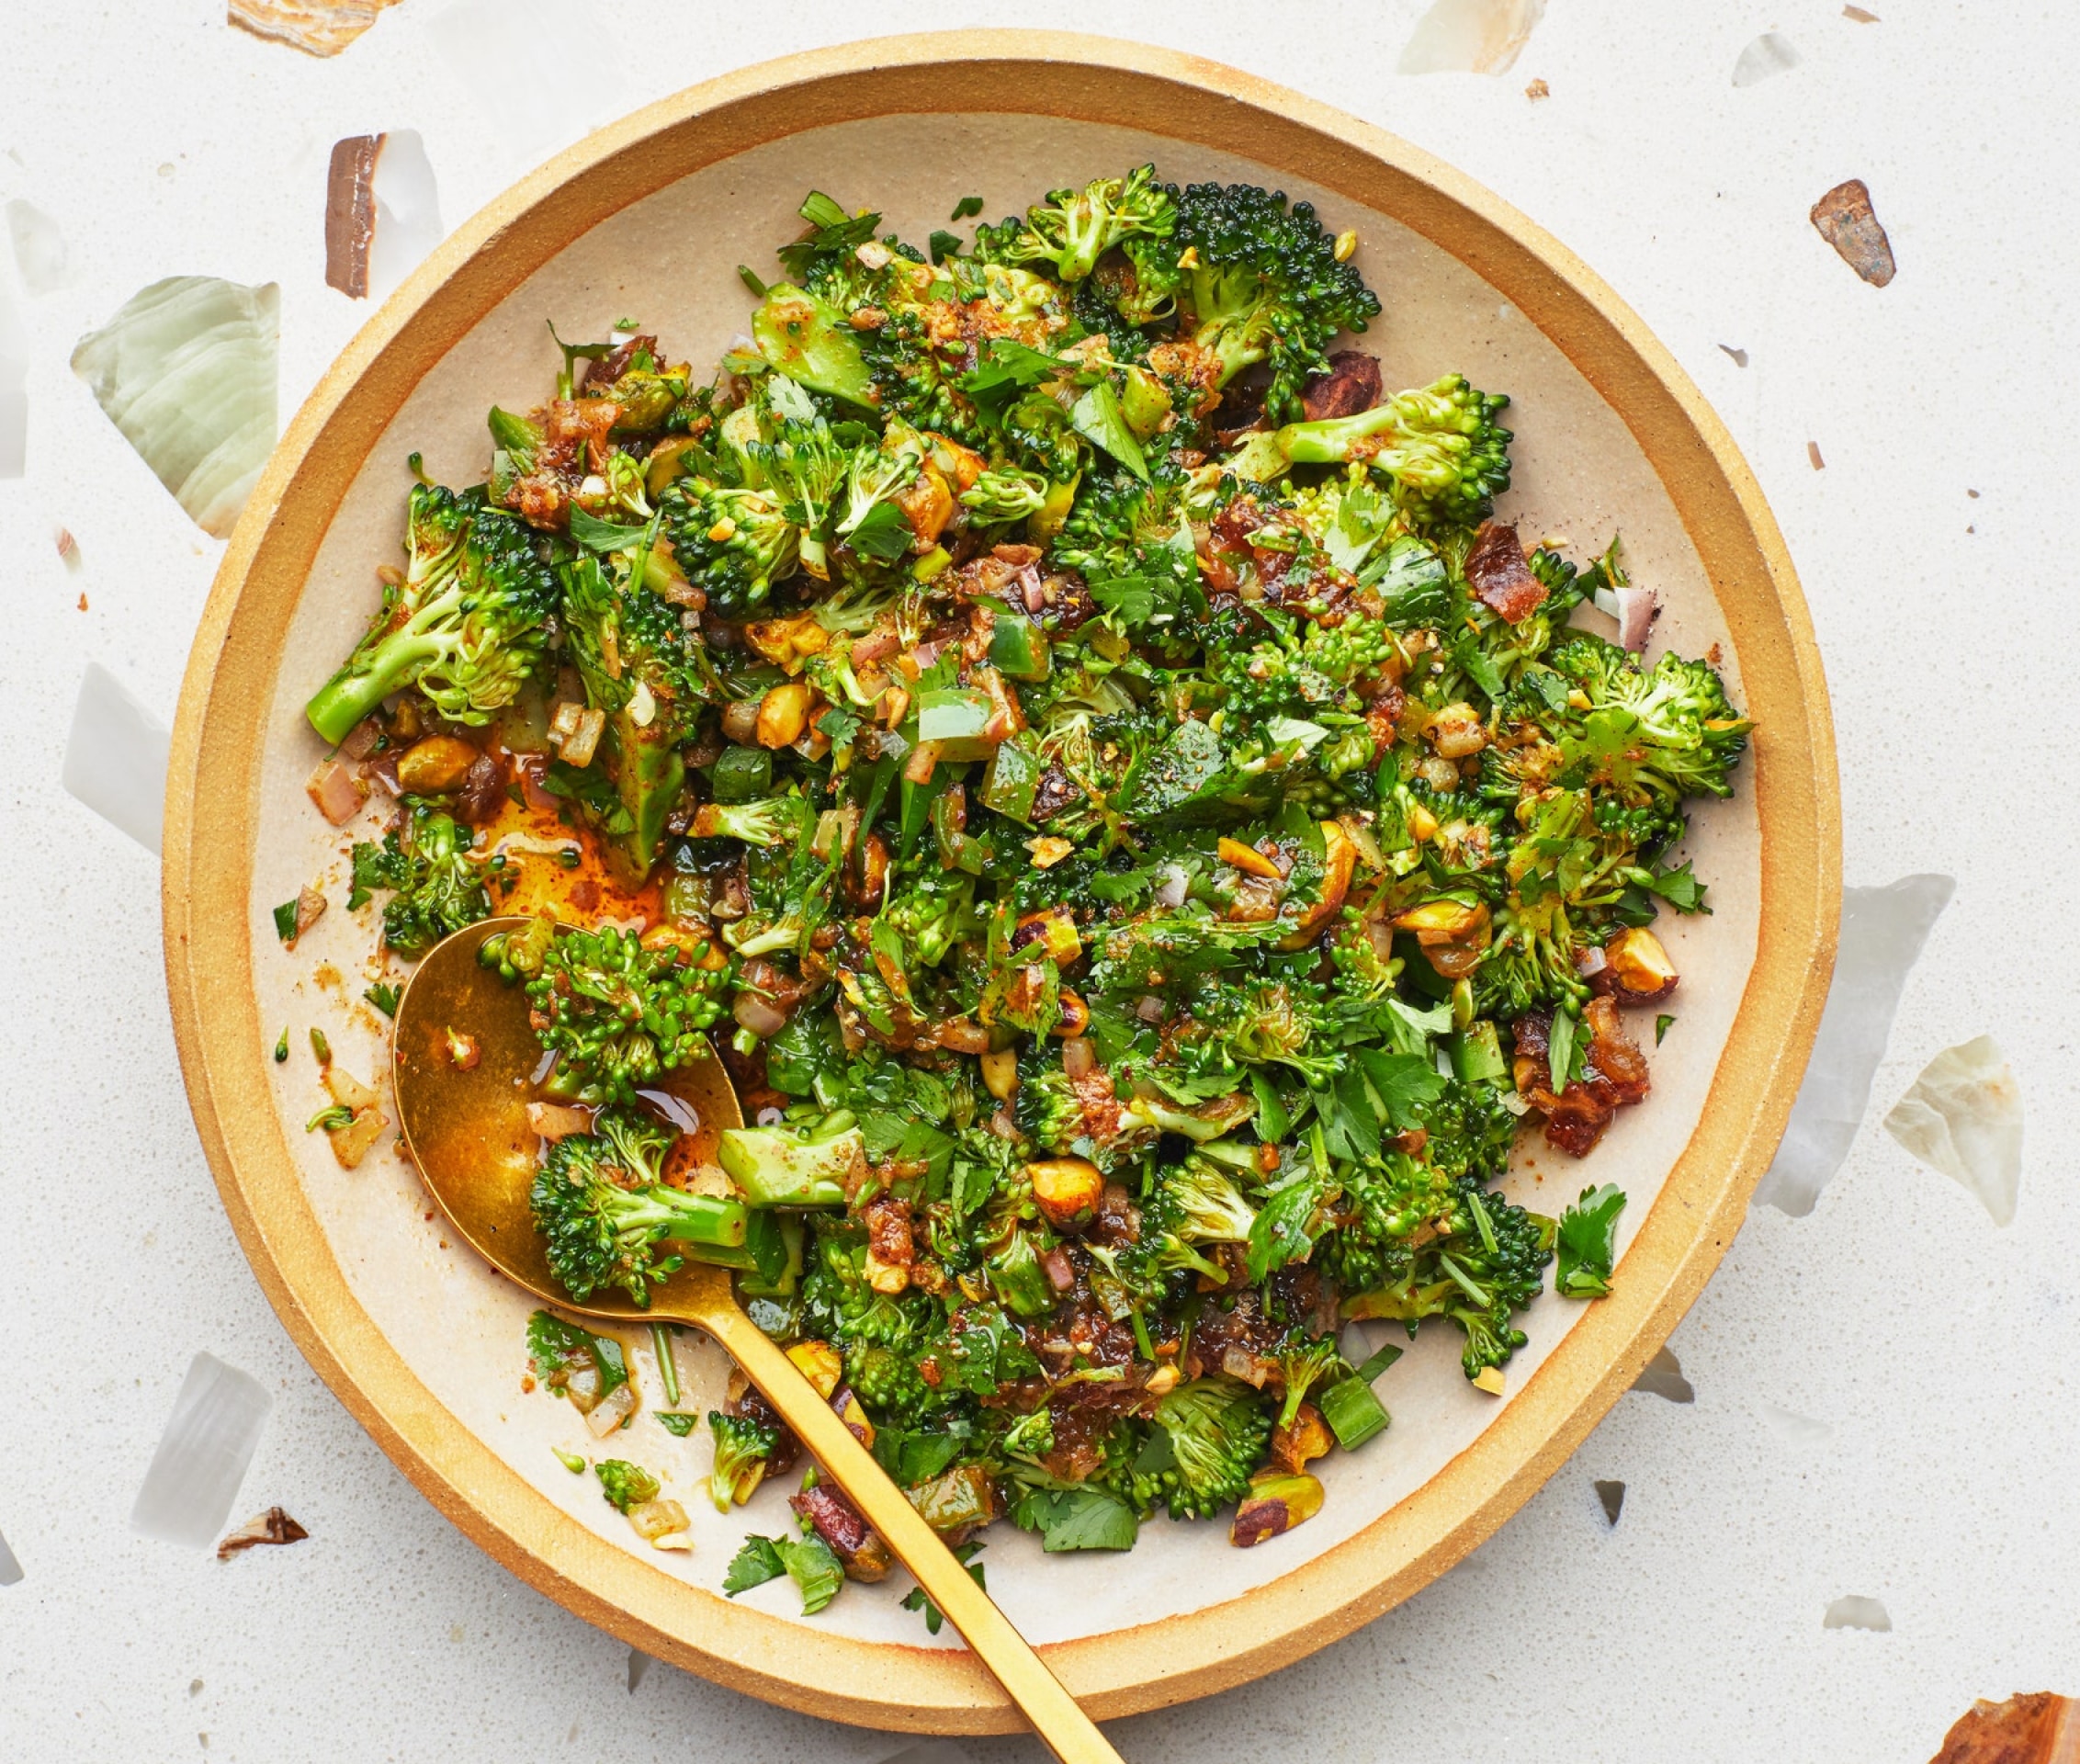 Image of Broccoli Spoon Salad With Warm Vinaigrette